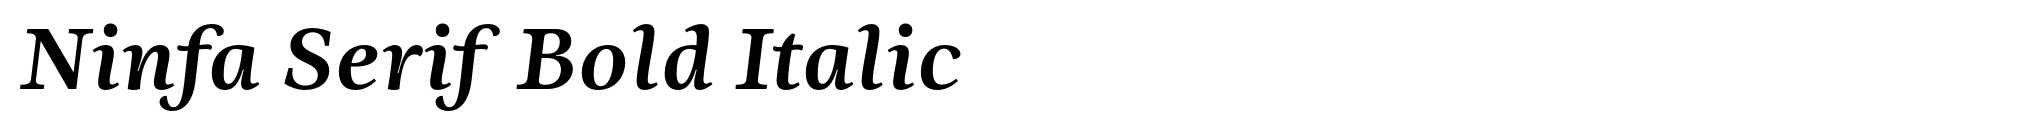 Ninfa Serif Bold Italic image